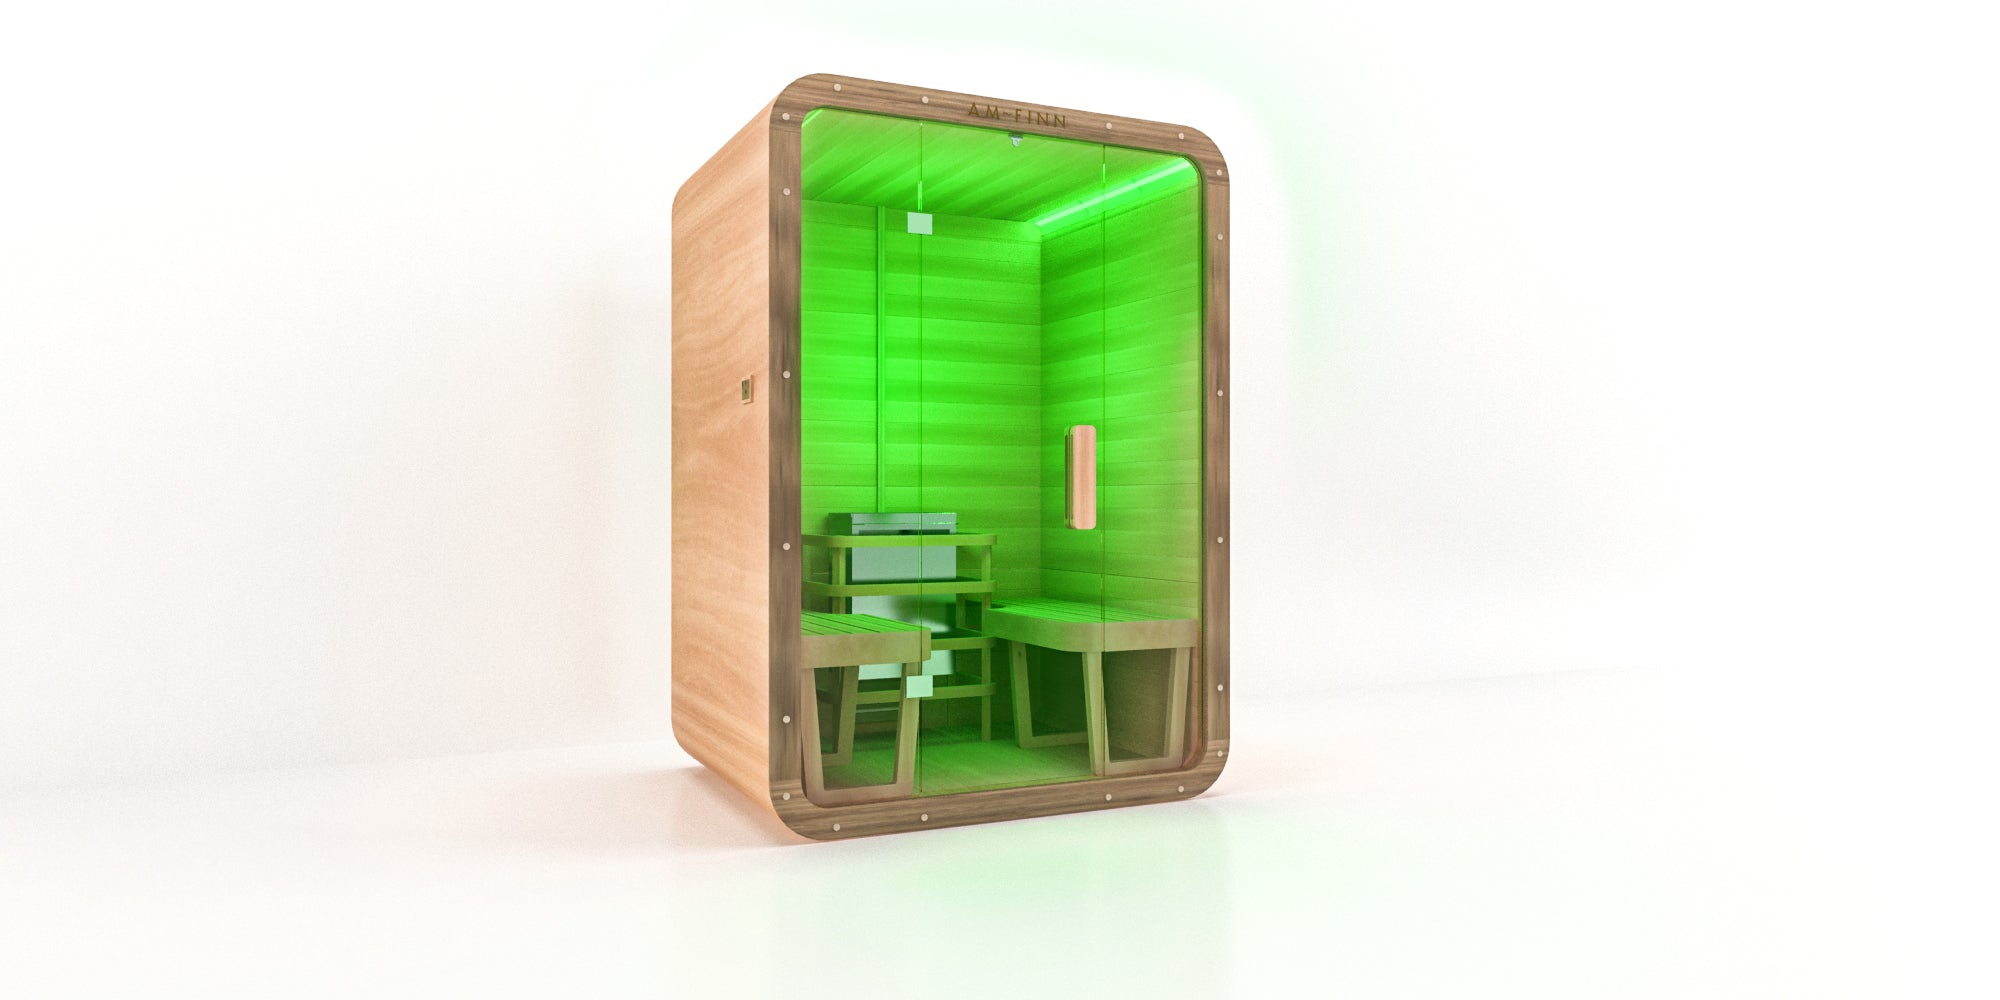 AM-FINN Trend Modular Sauna